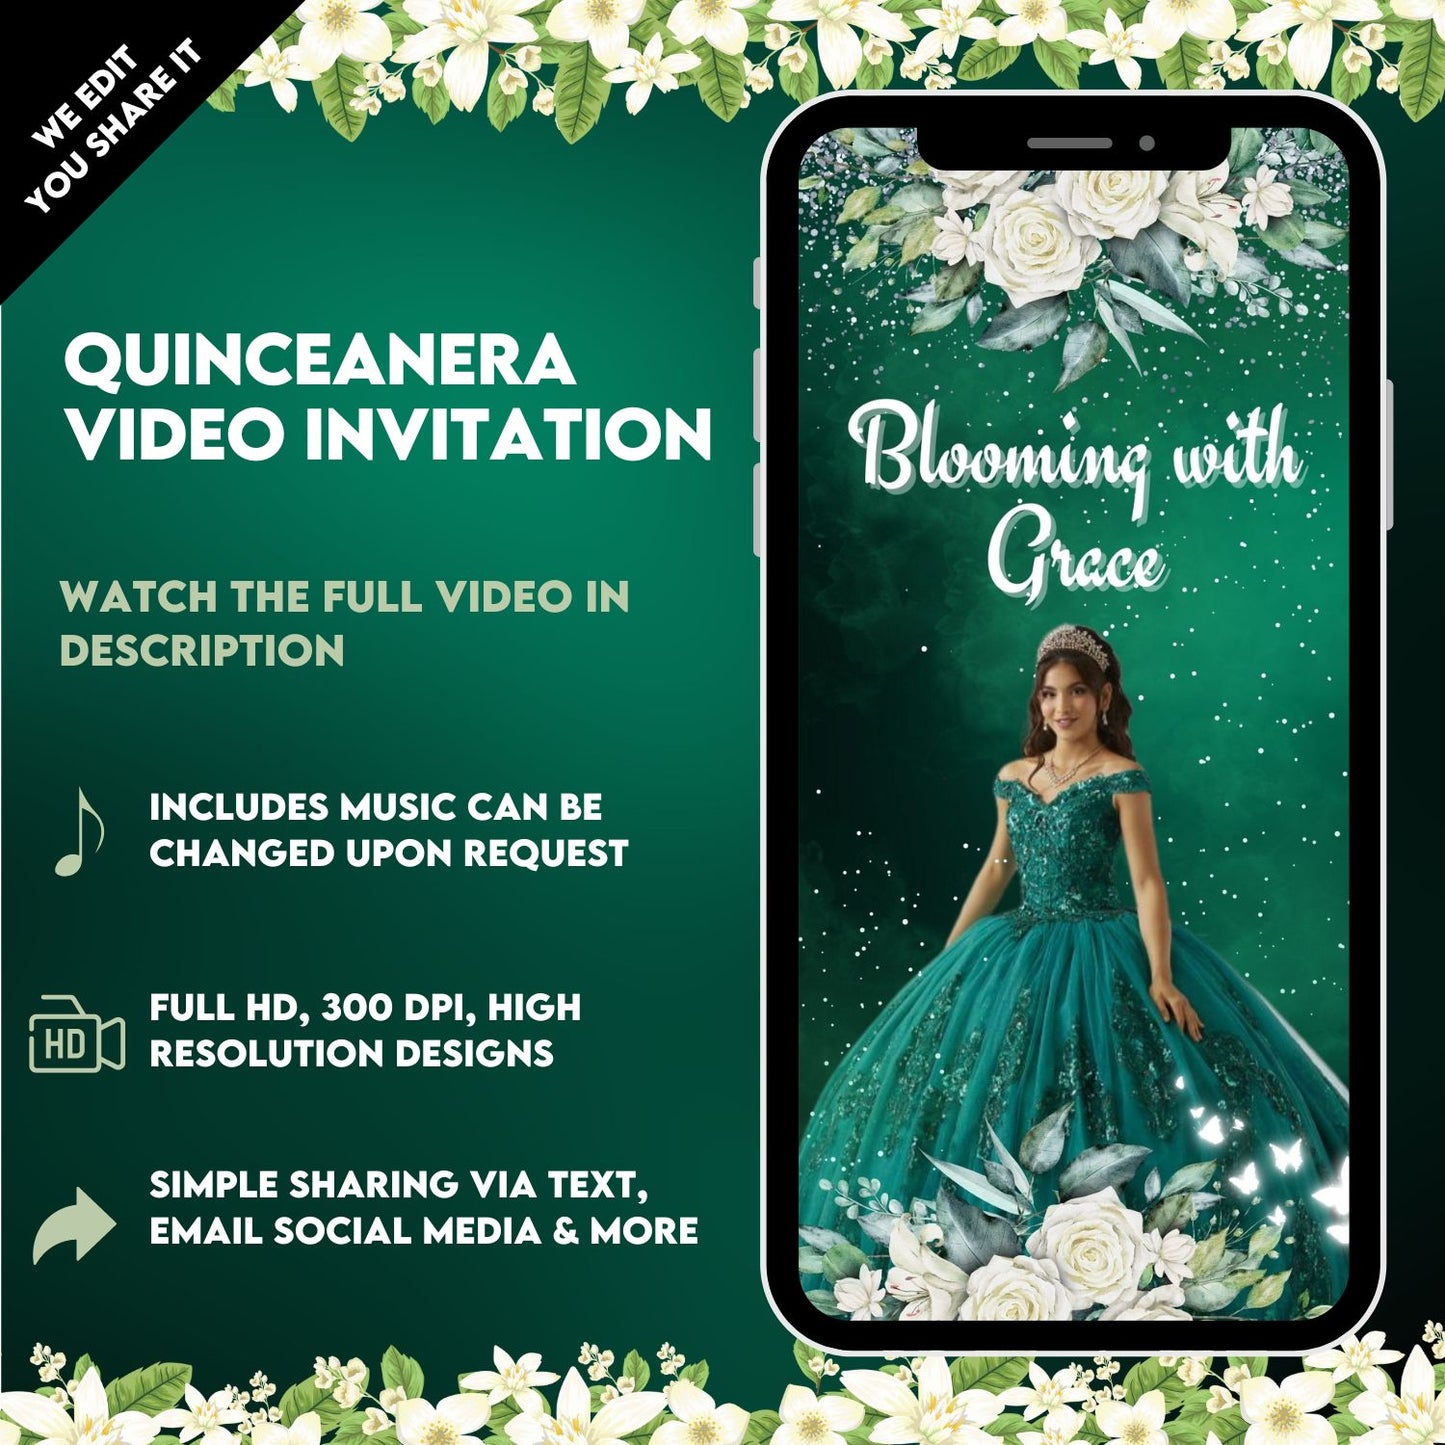 Quinceanera Animated Video Invitation - Quinceanera Emerald Green Theme Invitation